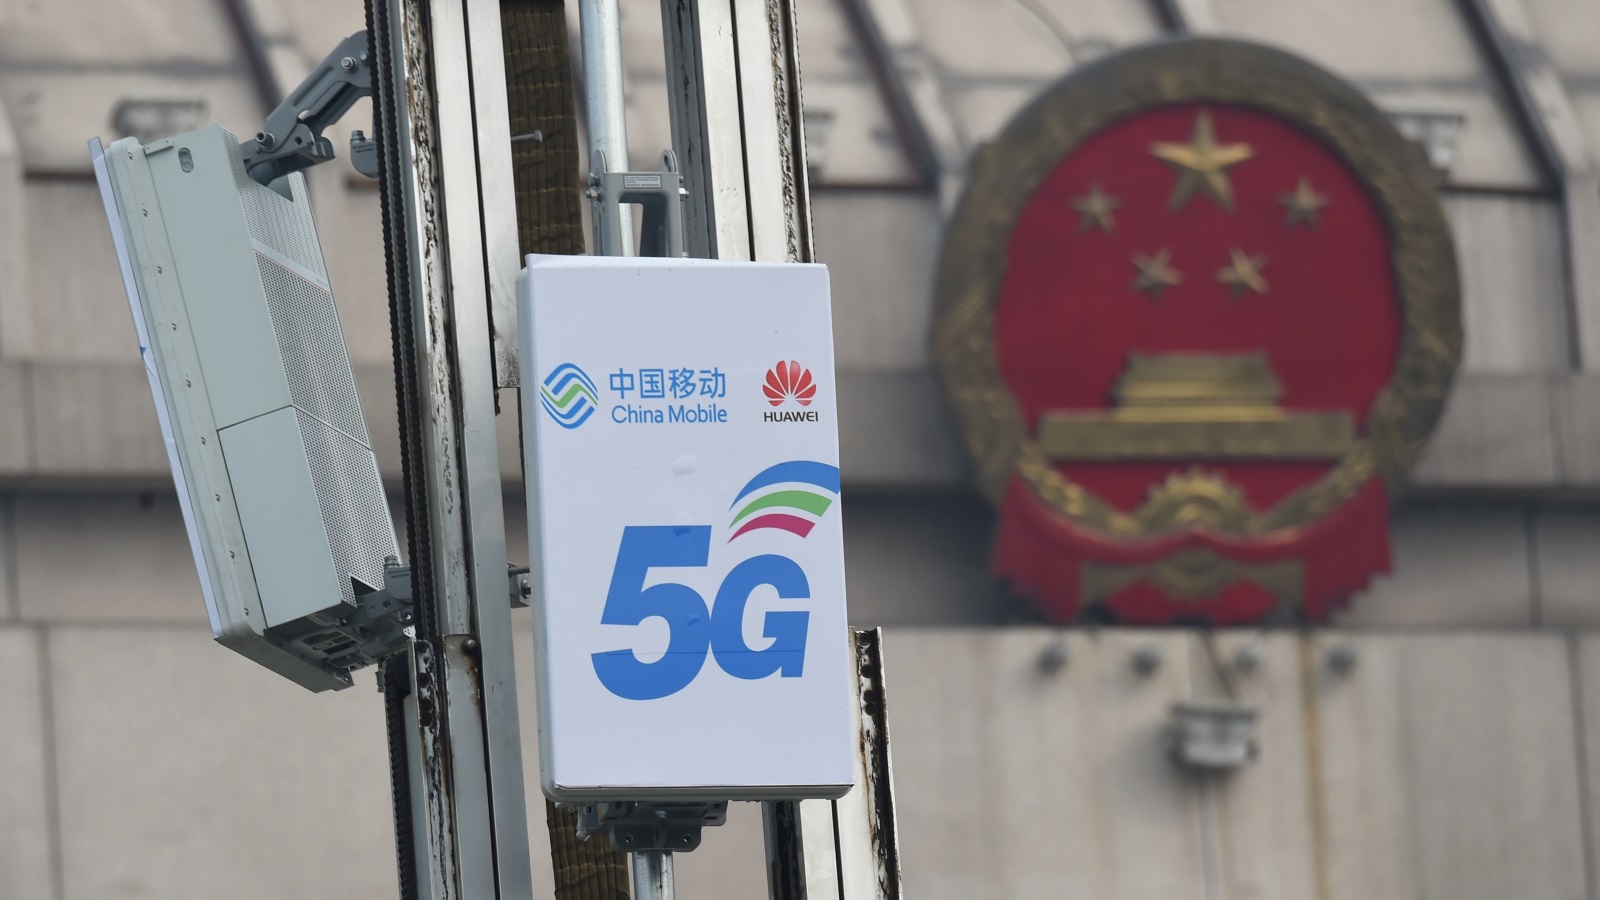 شركة هواوي الصينية تعتبر أكبر مزود لمعدات الاتصالات في العالم التي تستخدم لبناء شبكات الجيلين الرابع والخامس للهواتف المحمولة (رويترز)